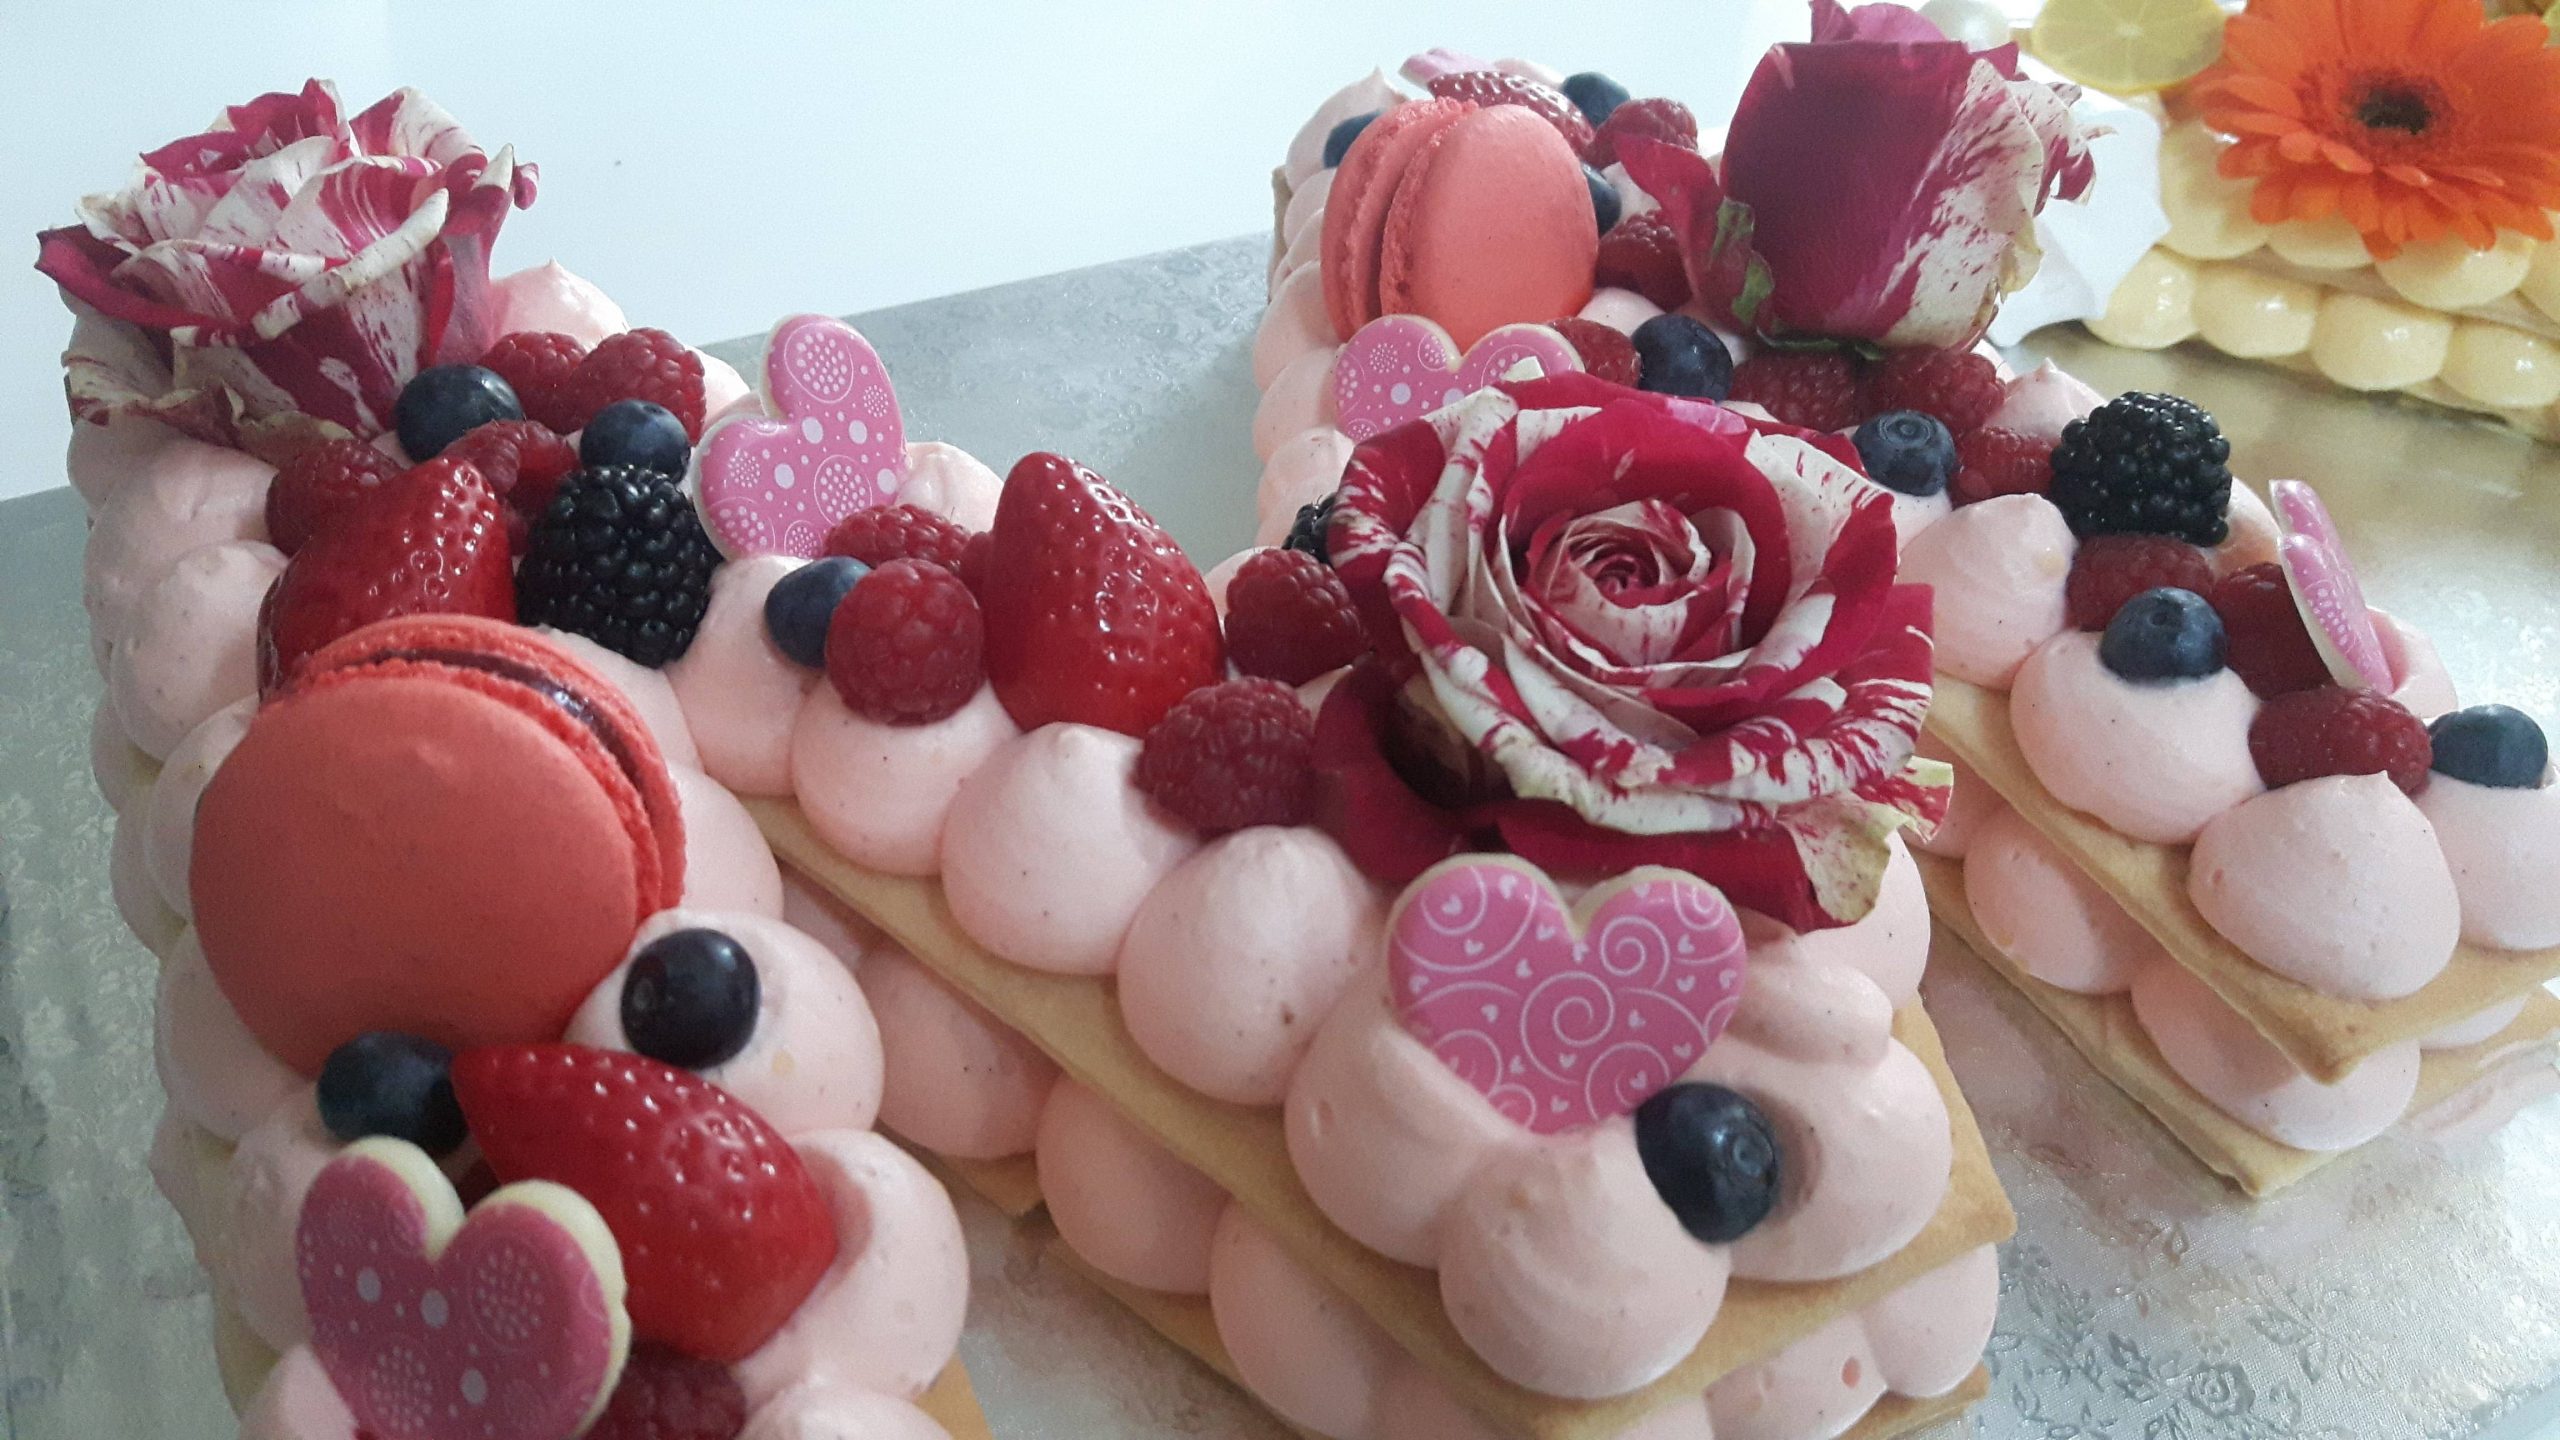 Letter cake fraise & framboise